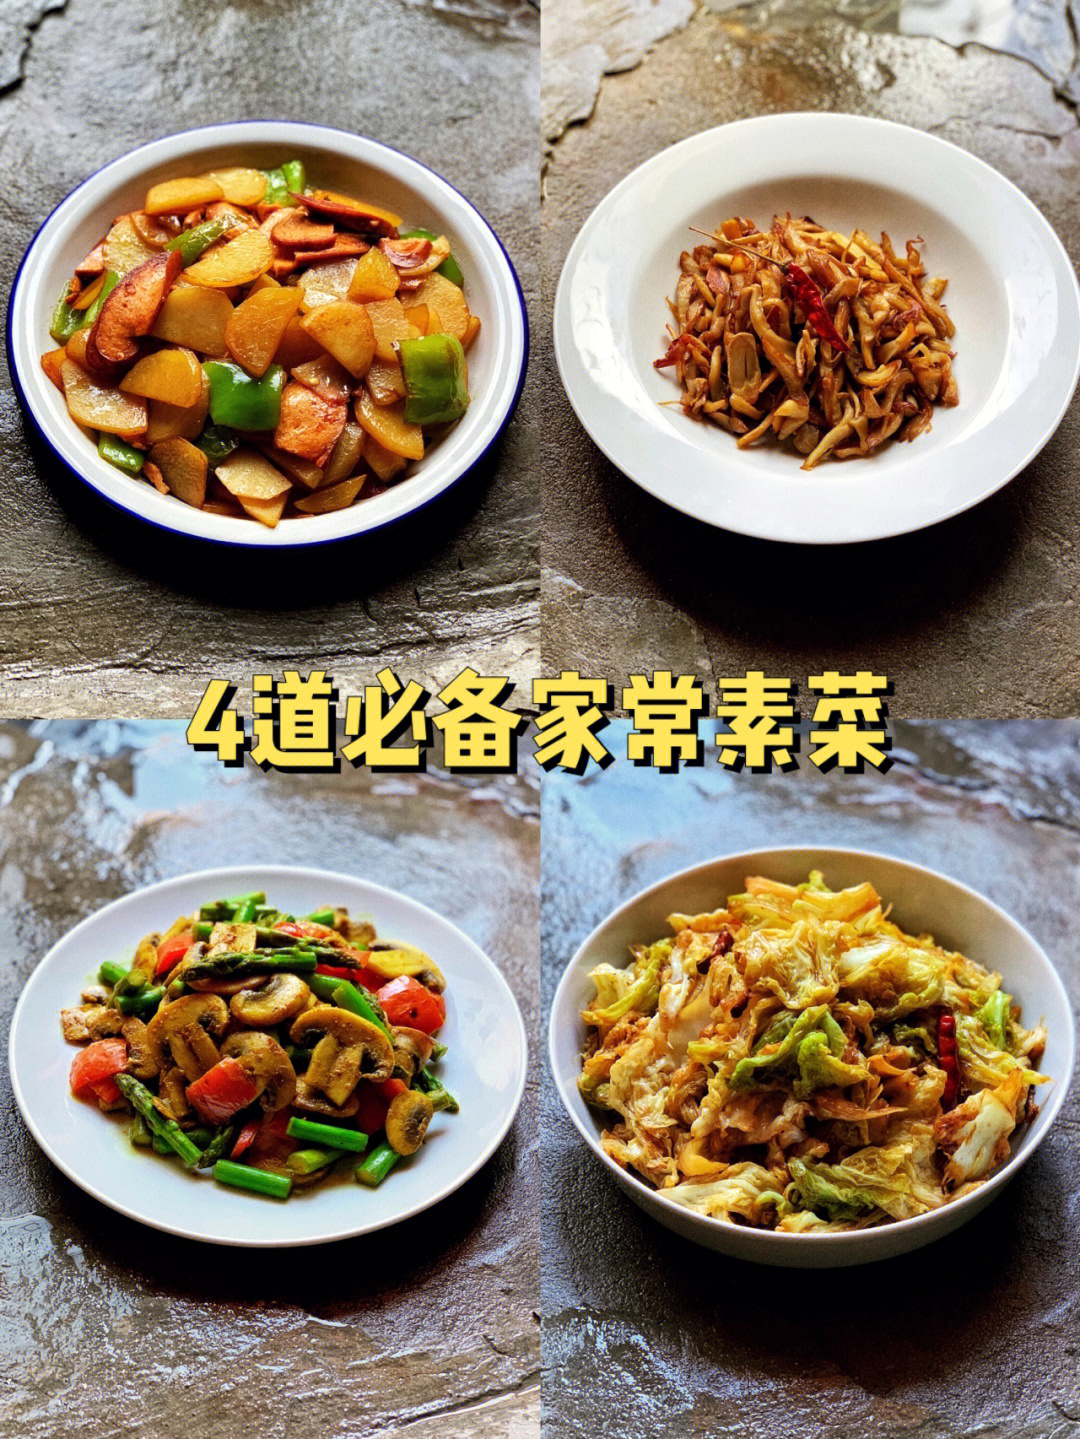 斋菜菜谱100道素食图片